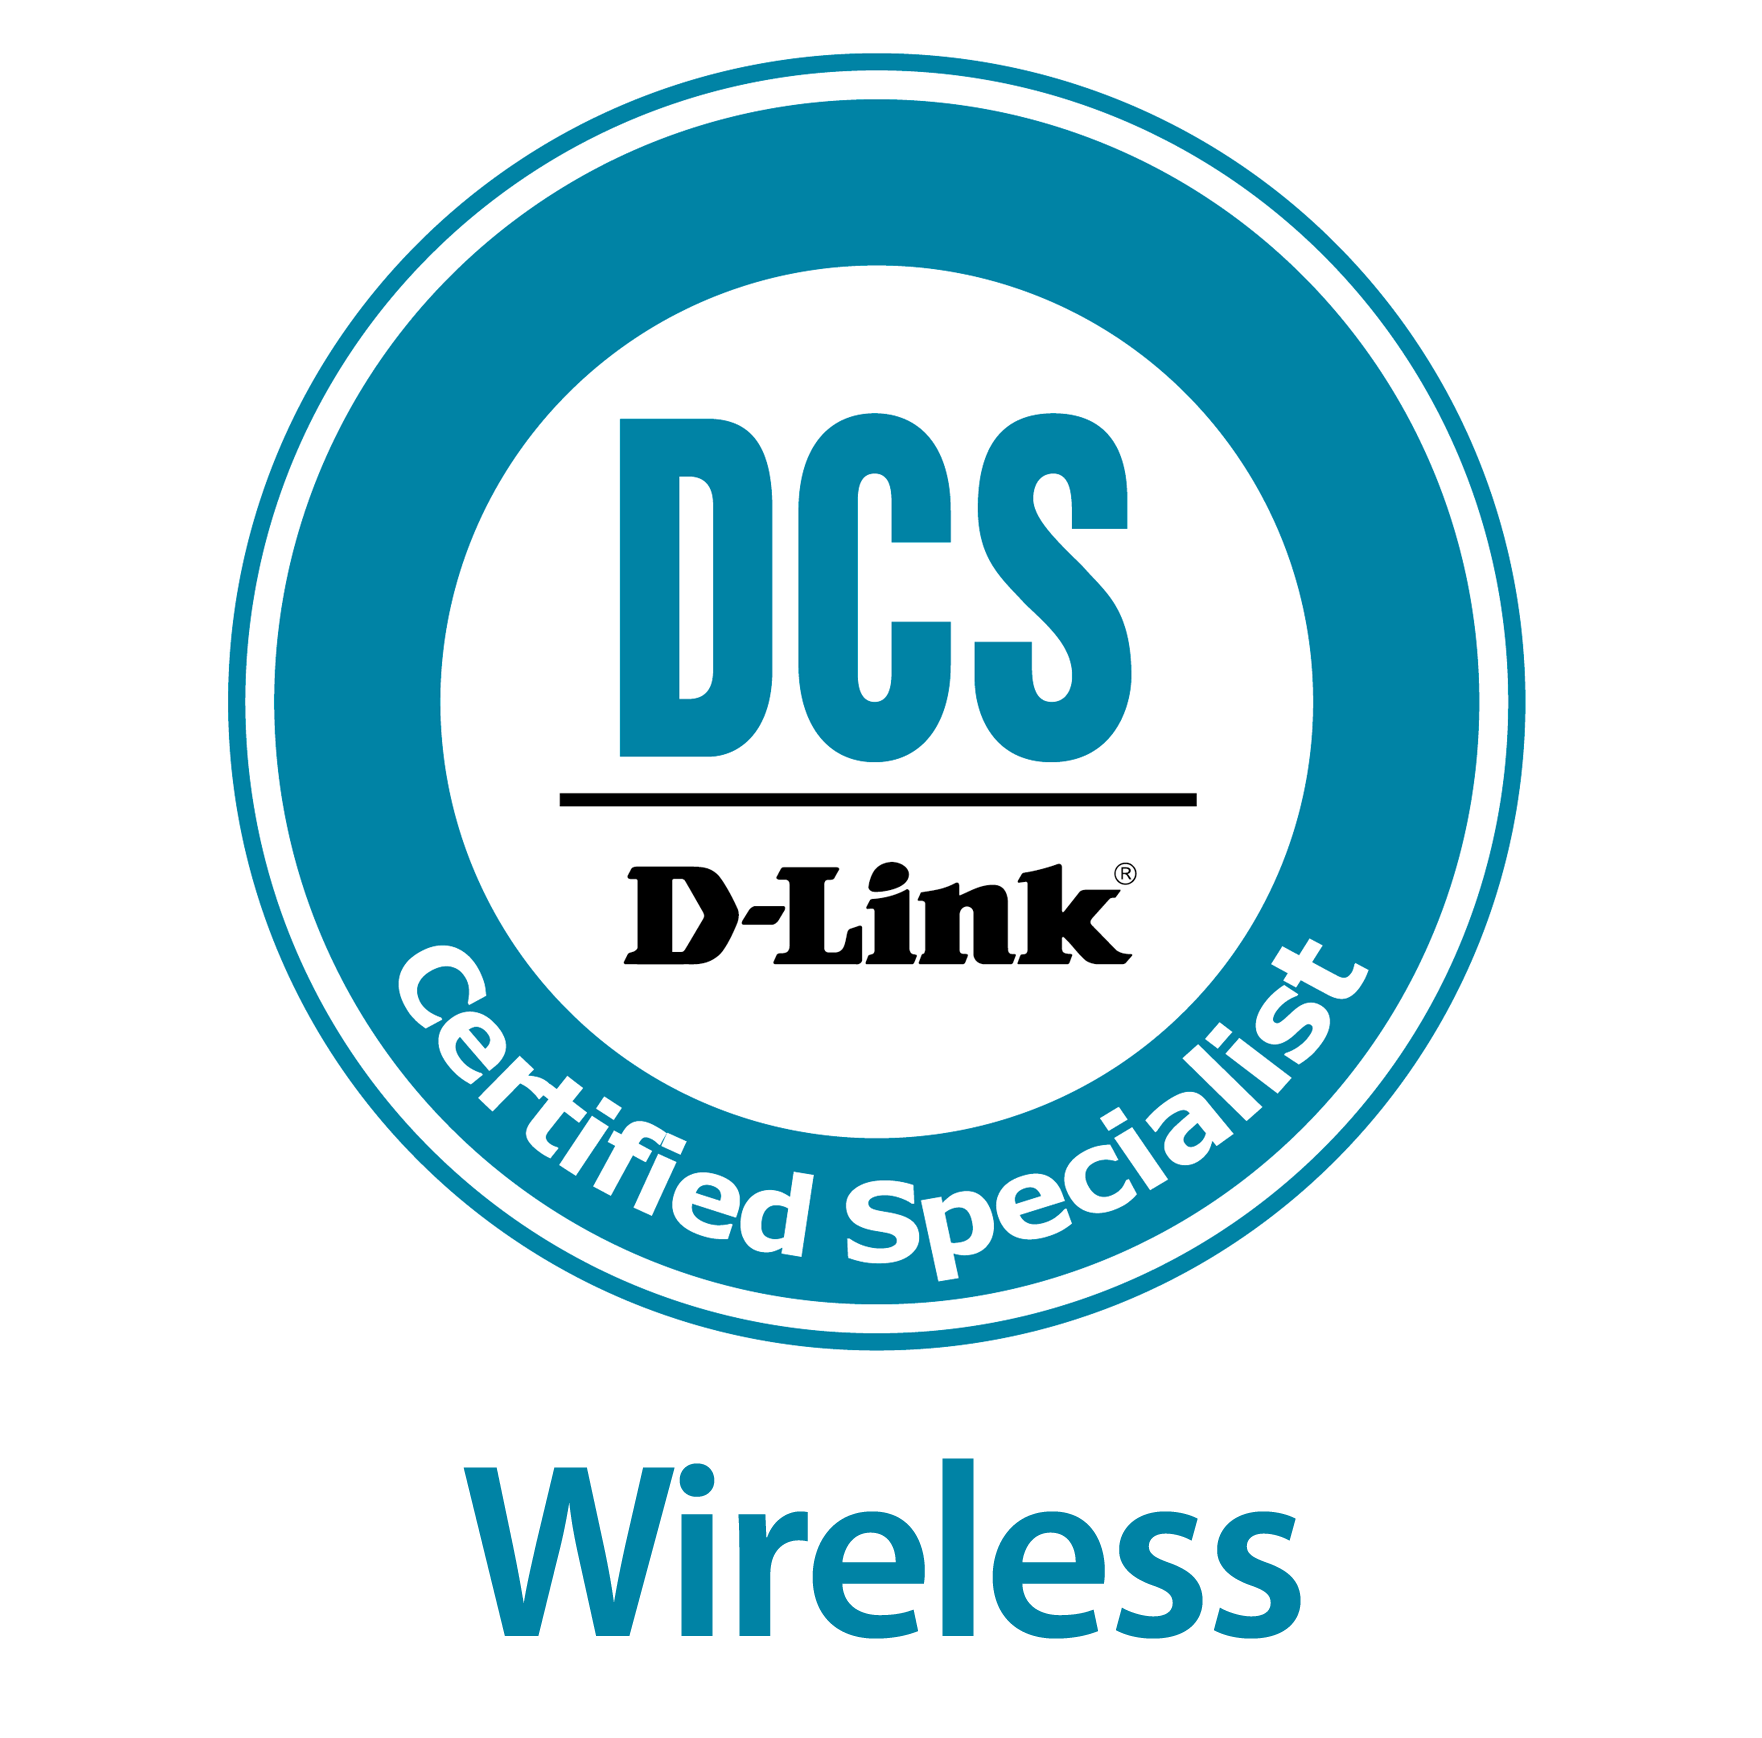 DCS-Wireless